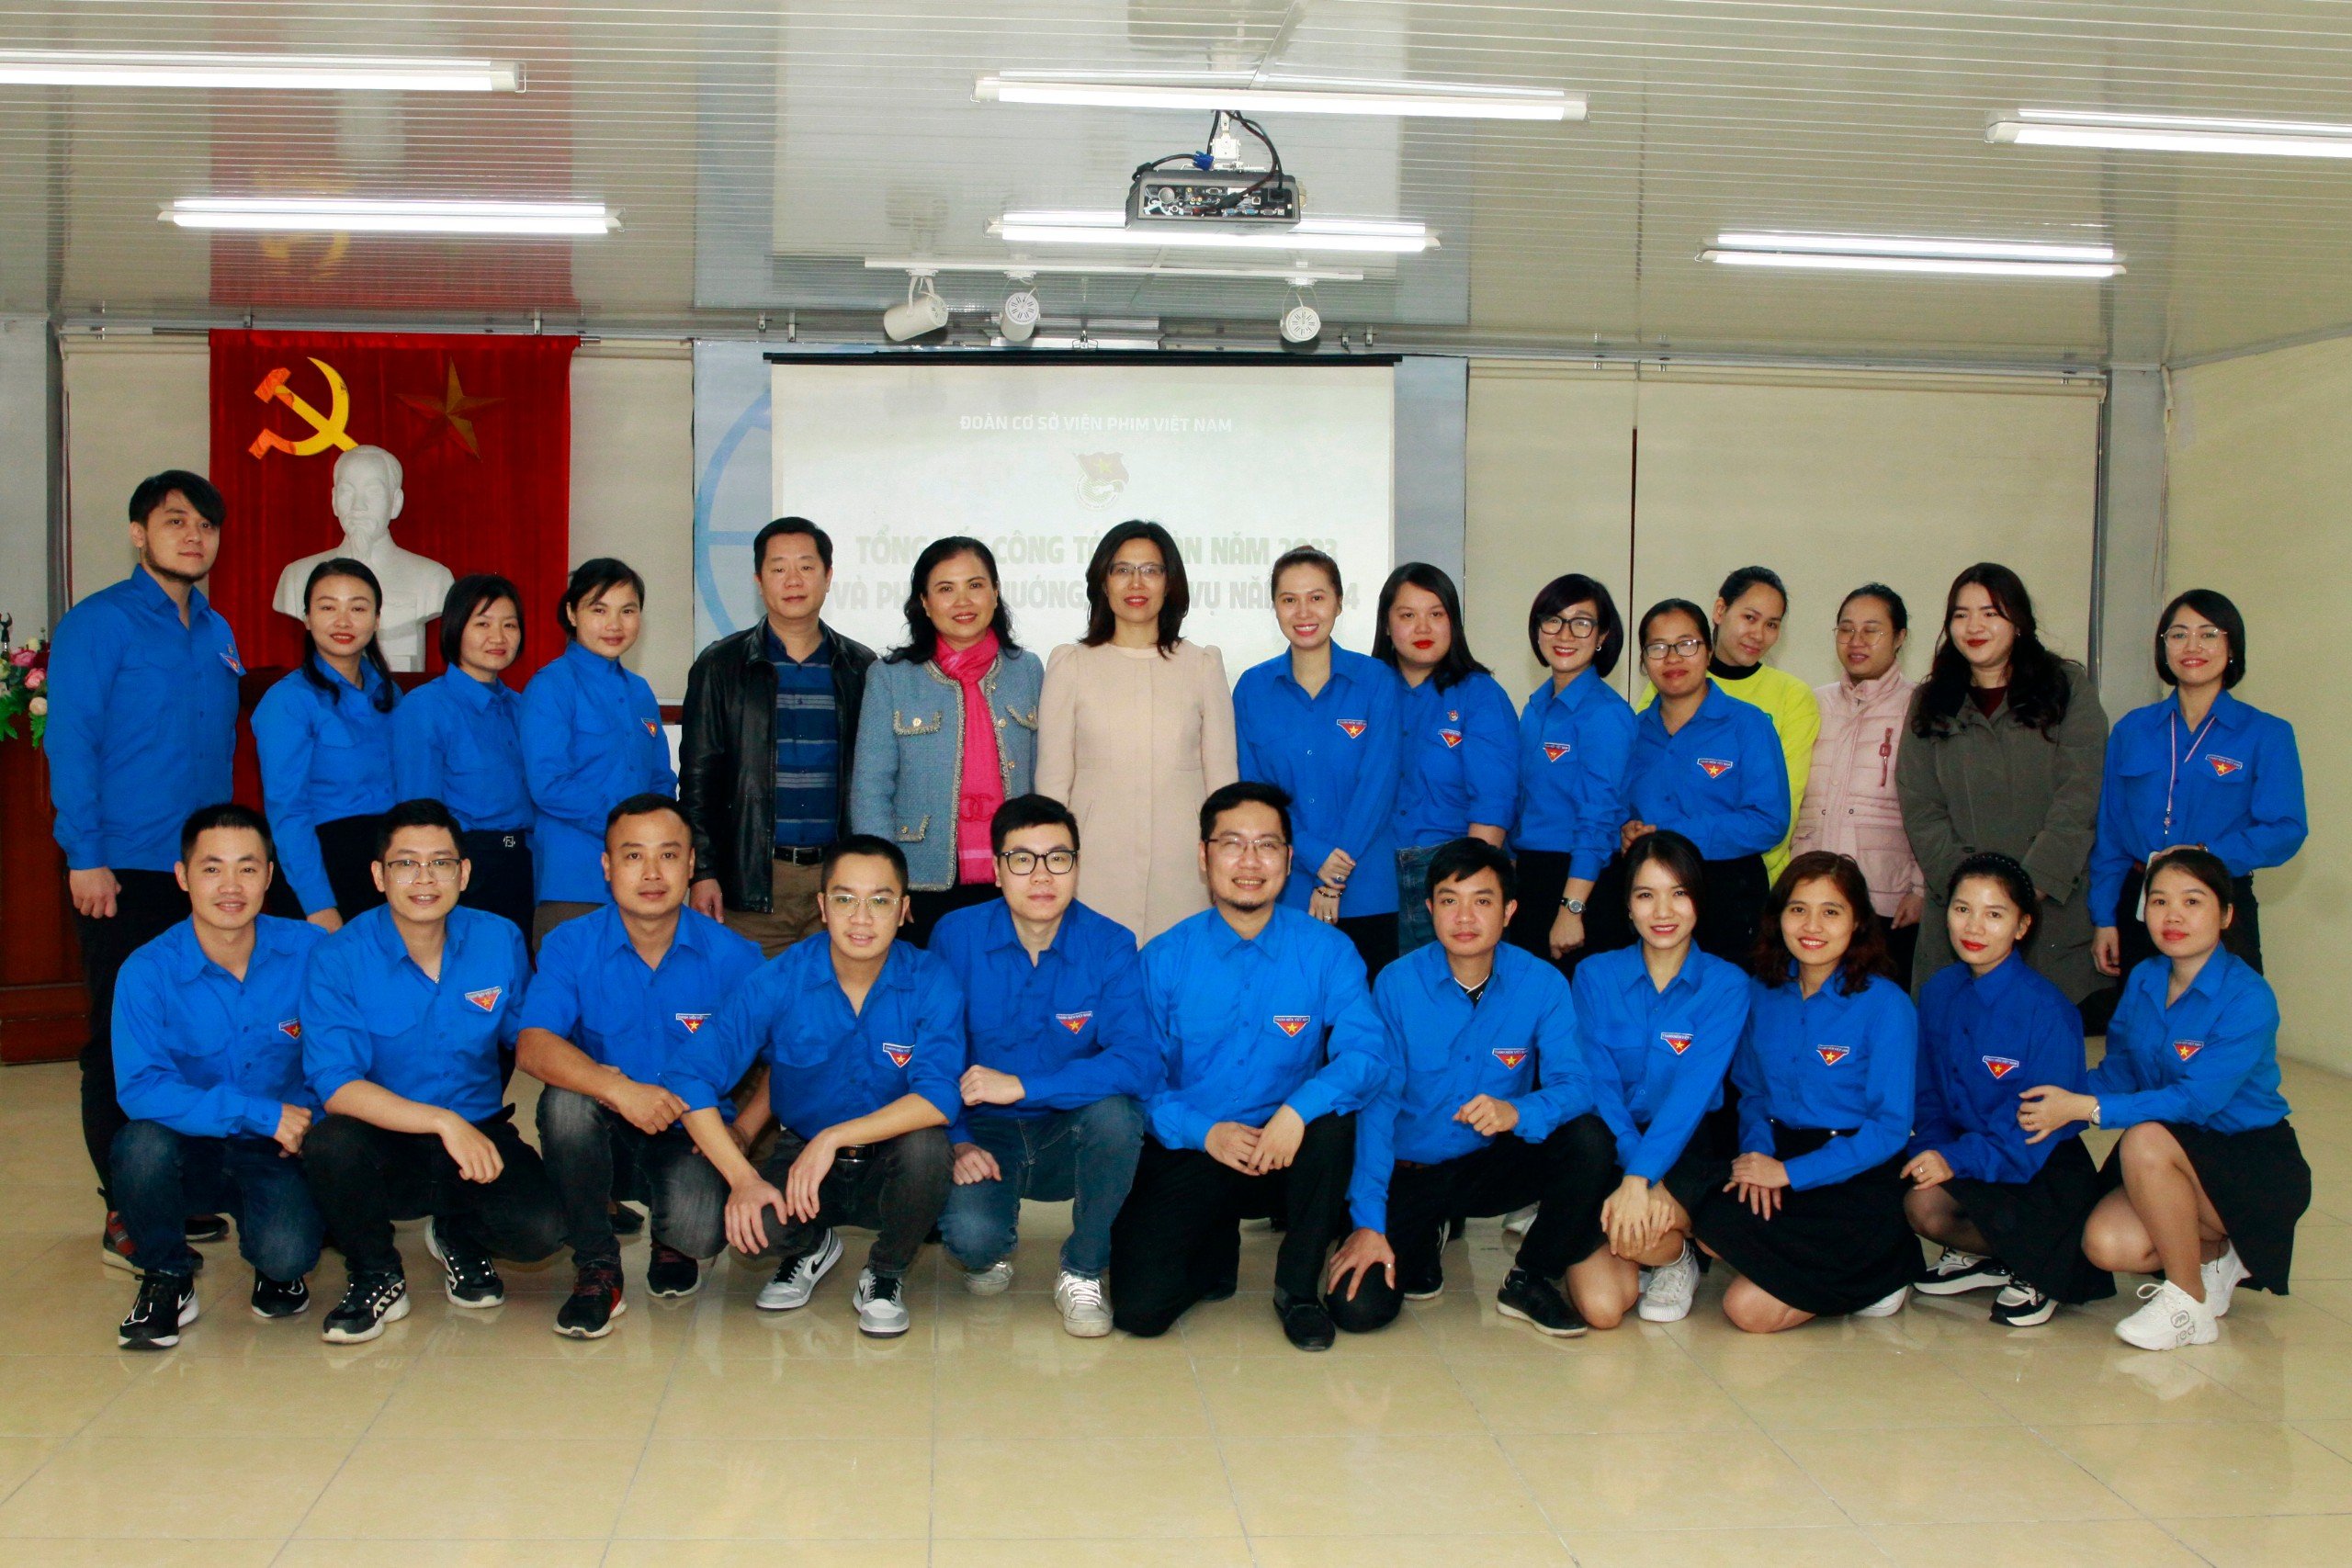 Viện Phim Việt Nam tổ chức Hội nghị Viên chức, người lao động năm 2024